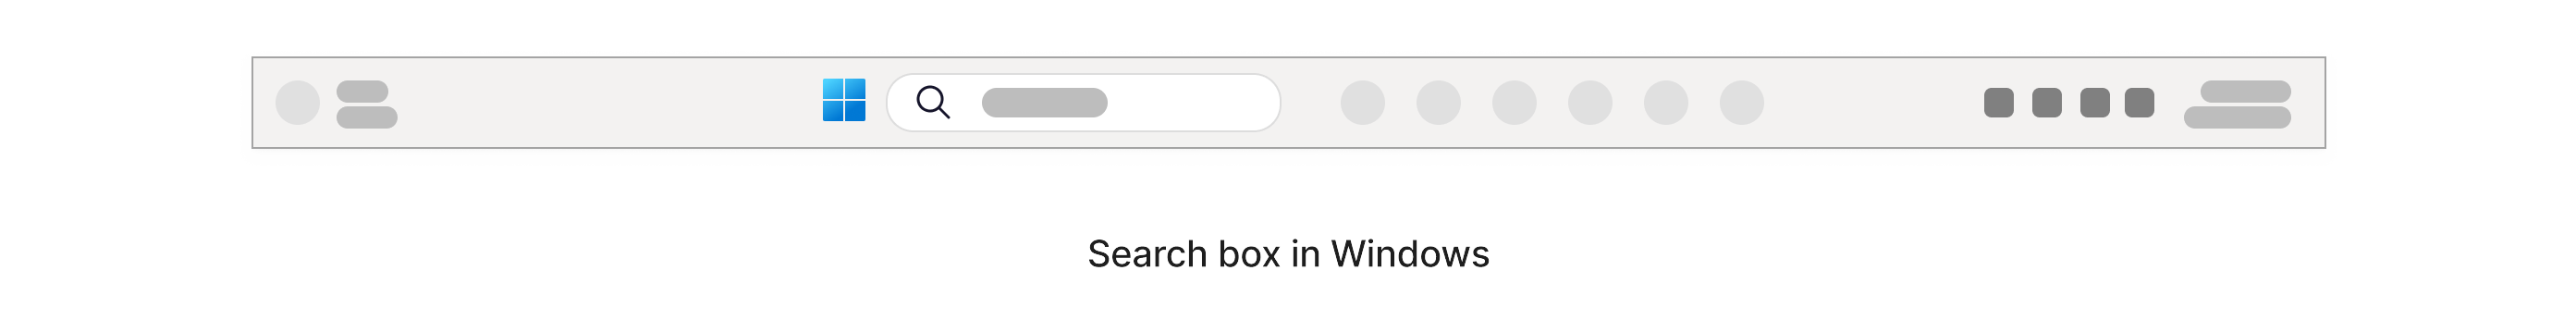 Caixa de pesquisa com um ícone de ampliação localizado na barra de tarefas do Windows na parte inferior do ecrã.